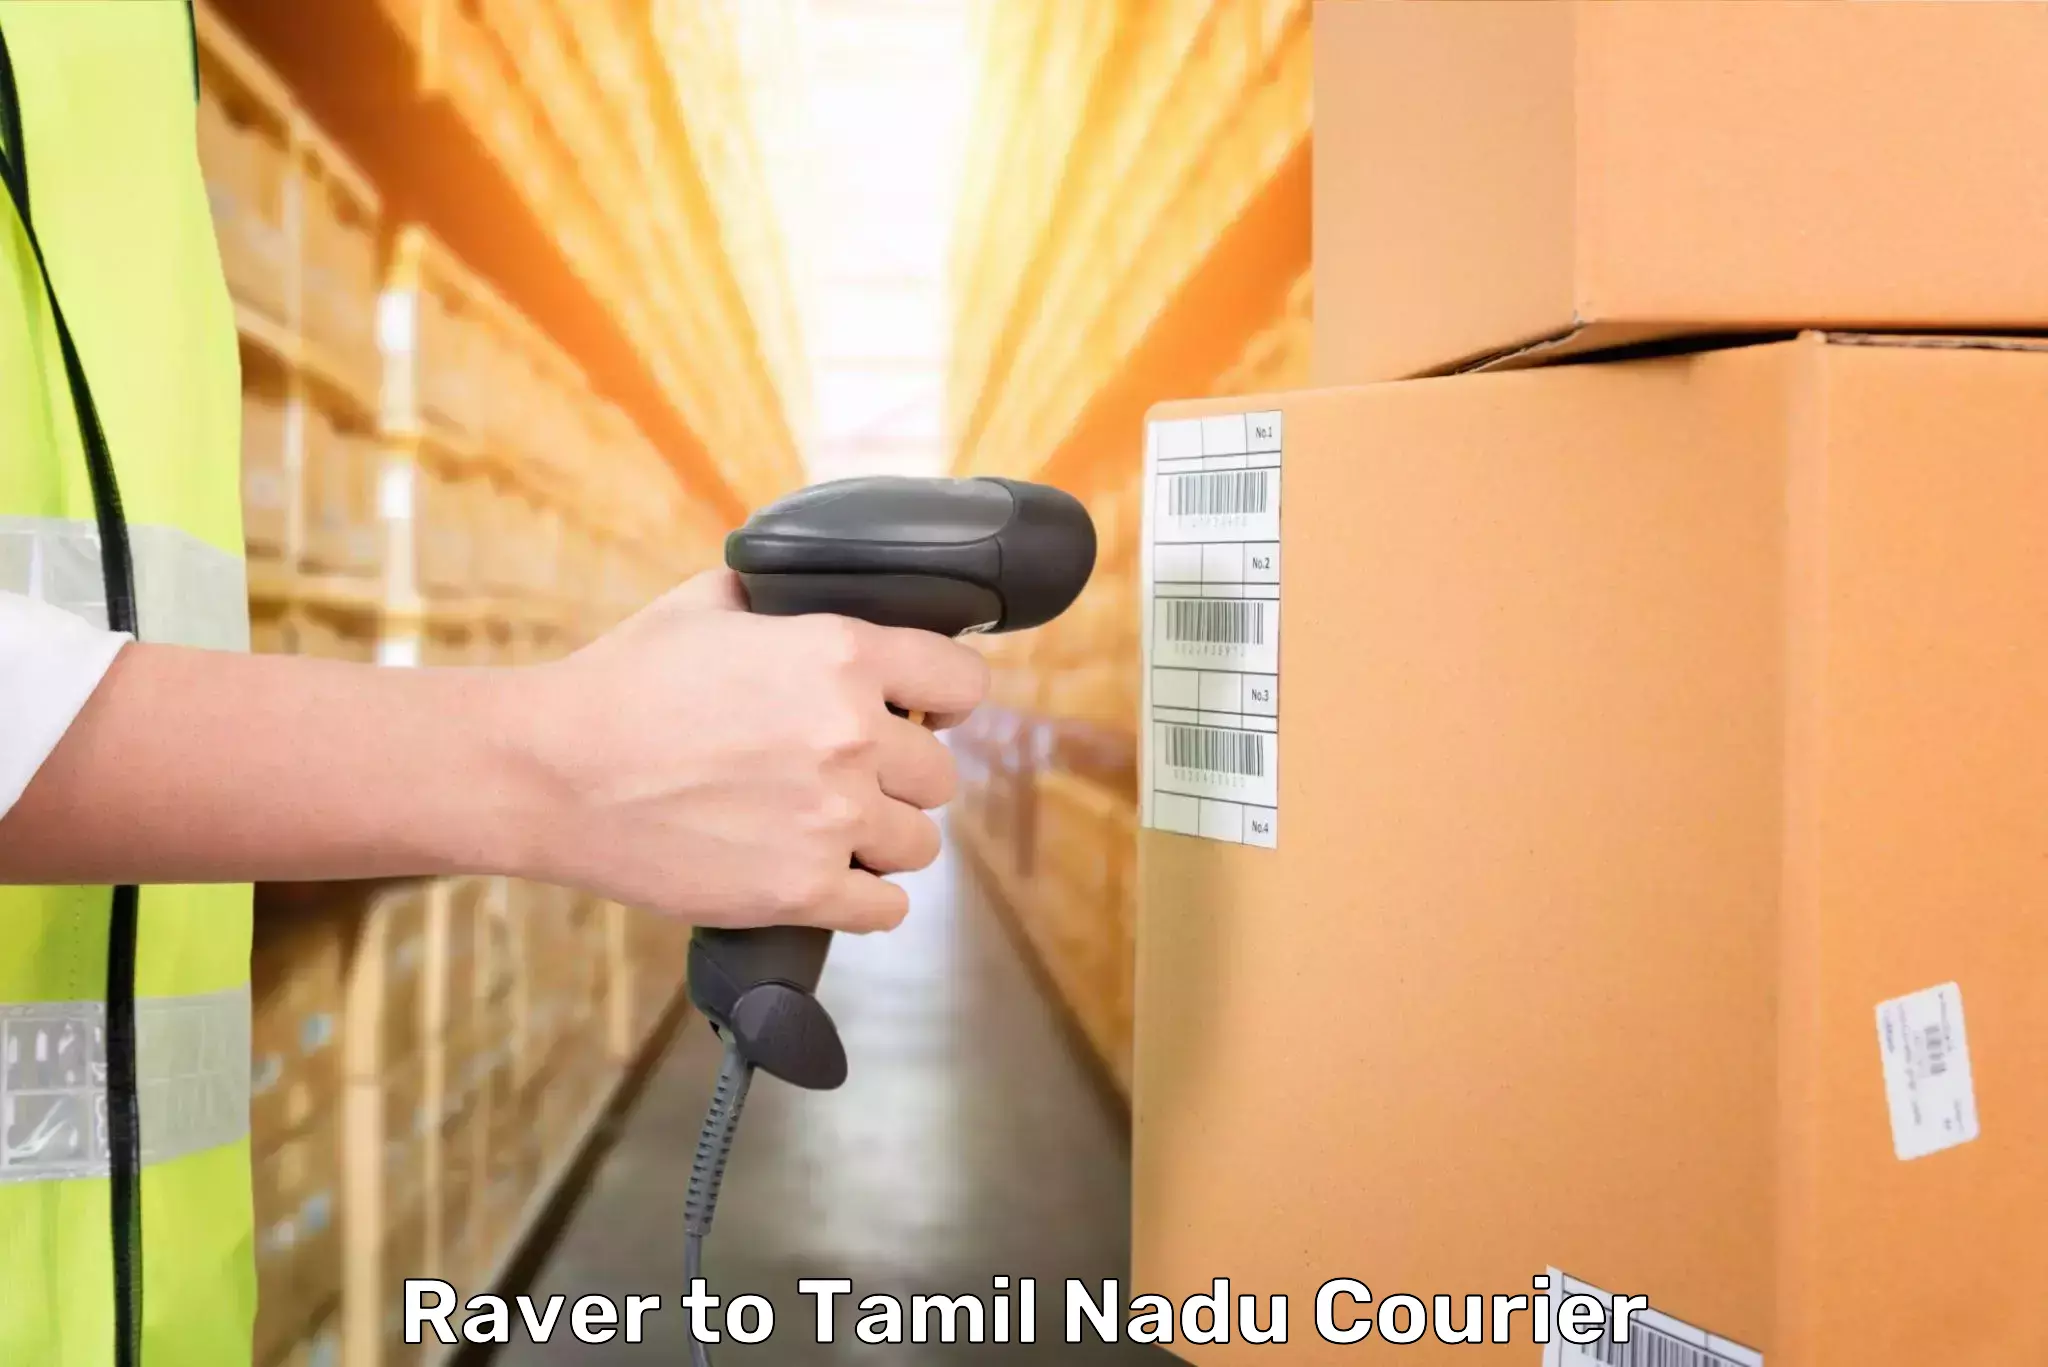 Luggage transport deals Raver to Tamil Nadu